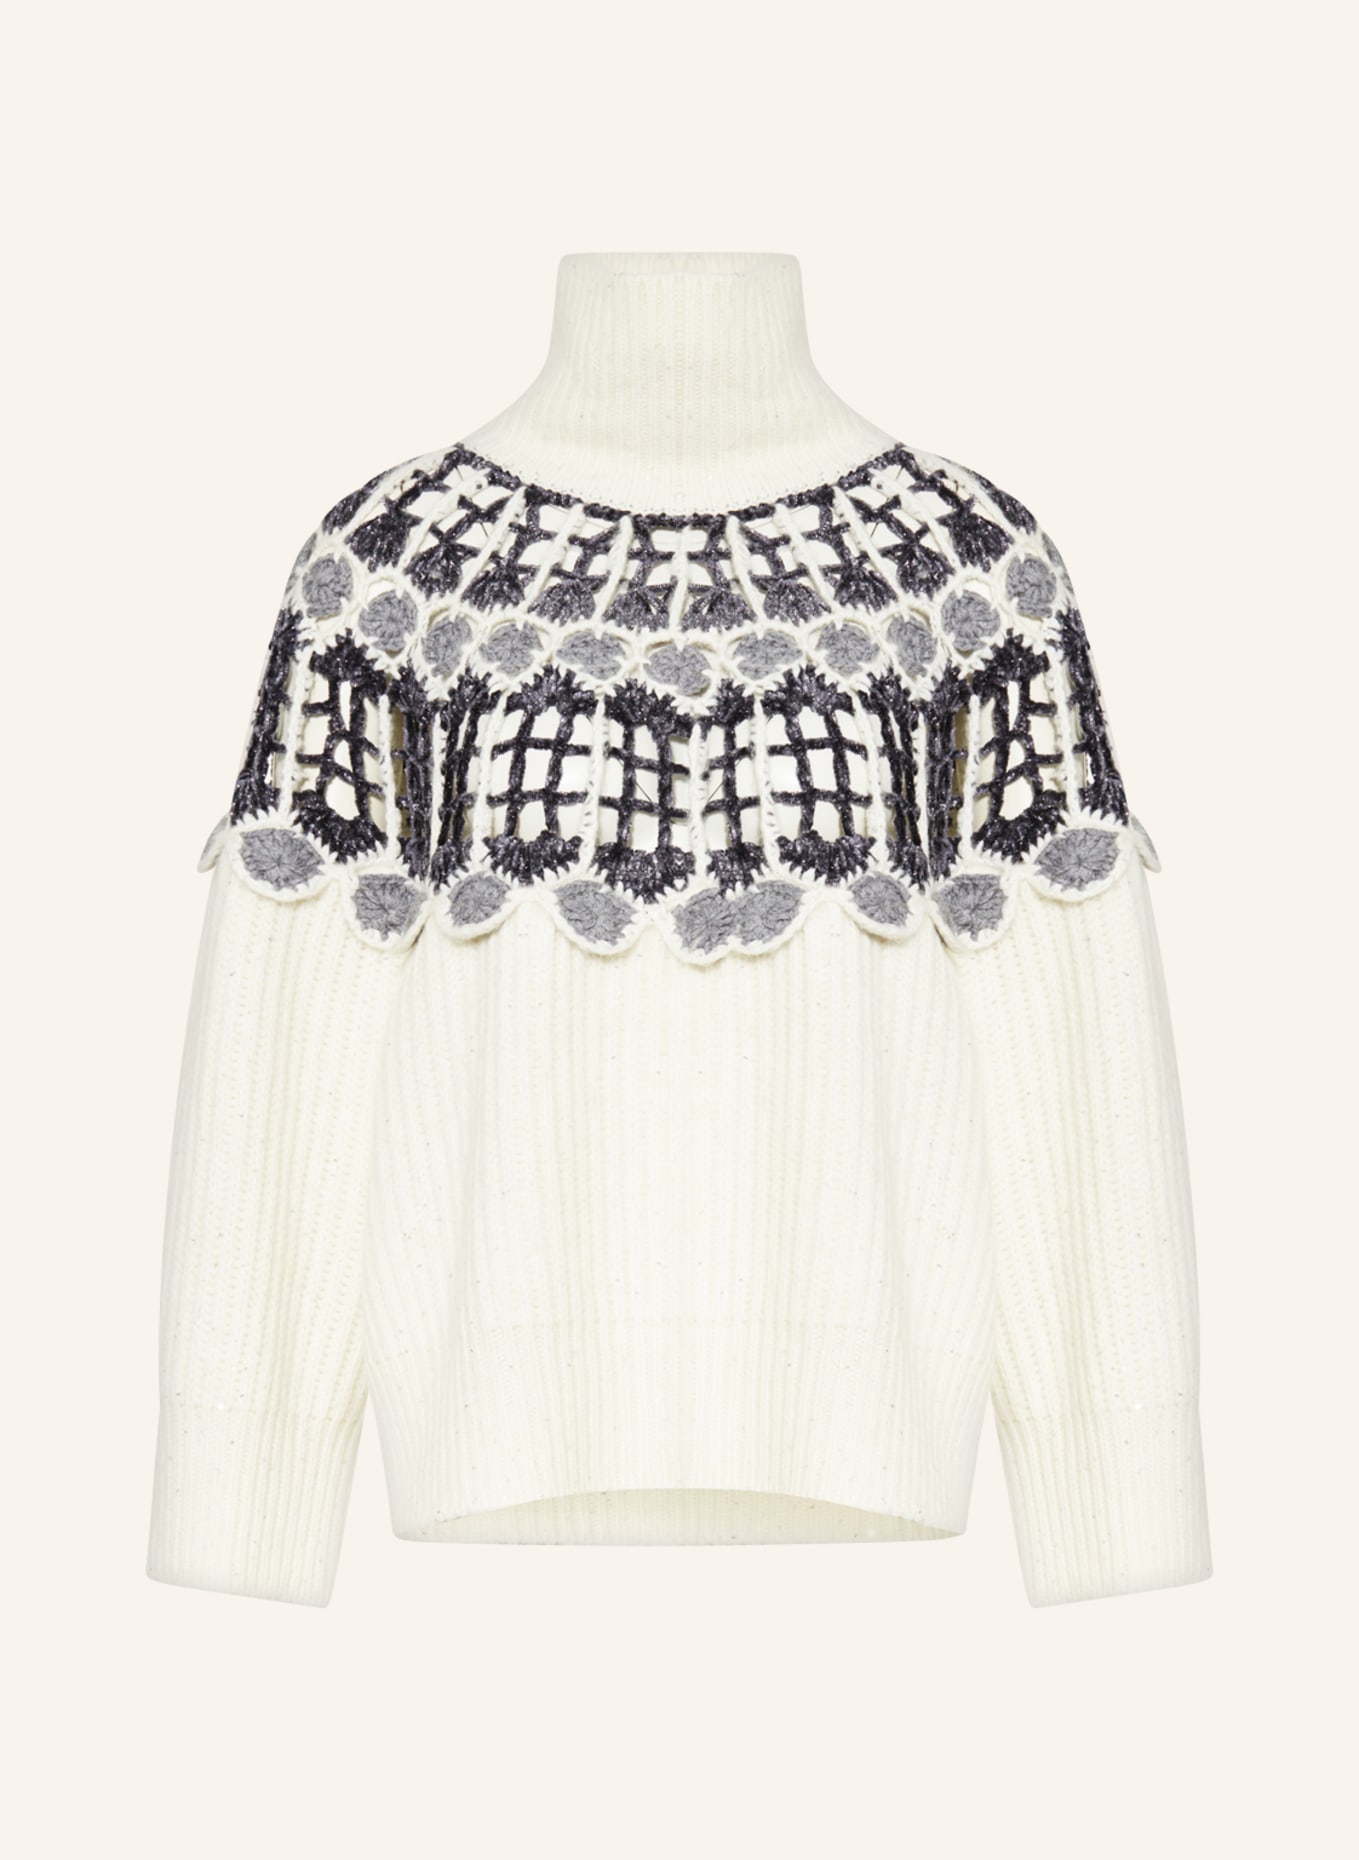 FABIANA FILIPPI Sweater with glitter thread, Color: ECRU/ GRAY/ DARK GRAY (Image 1)